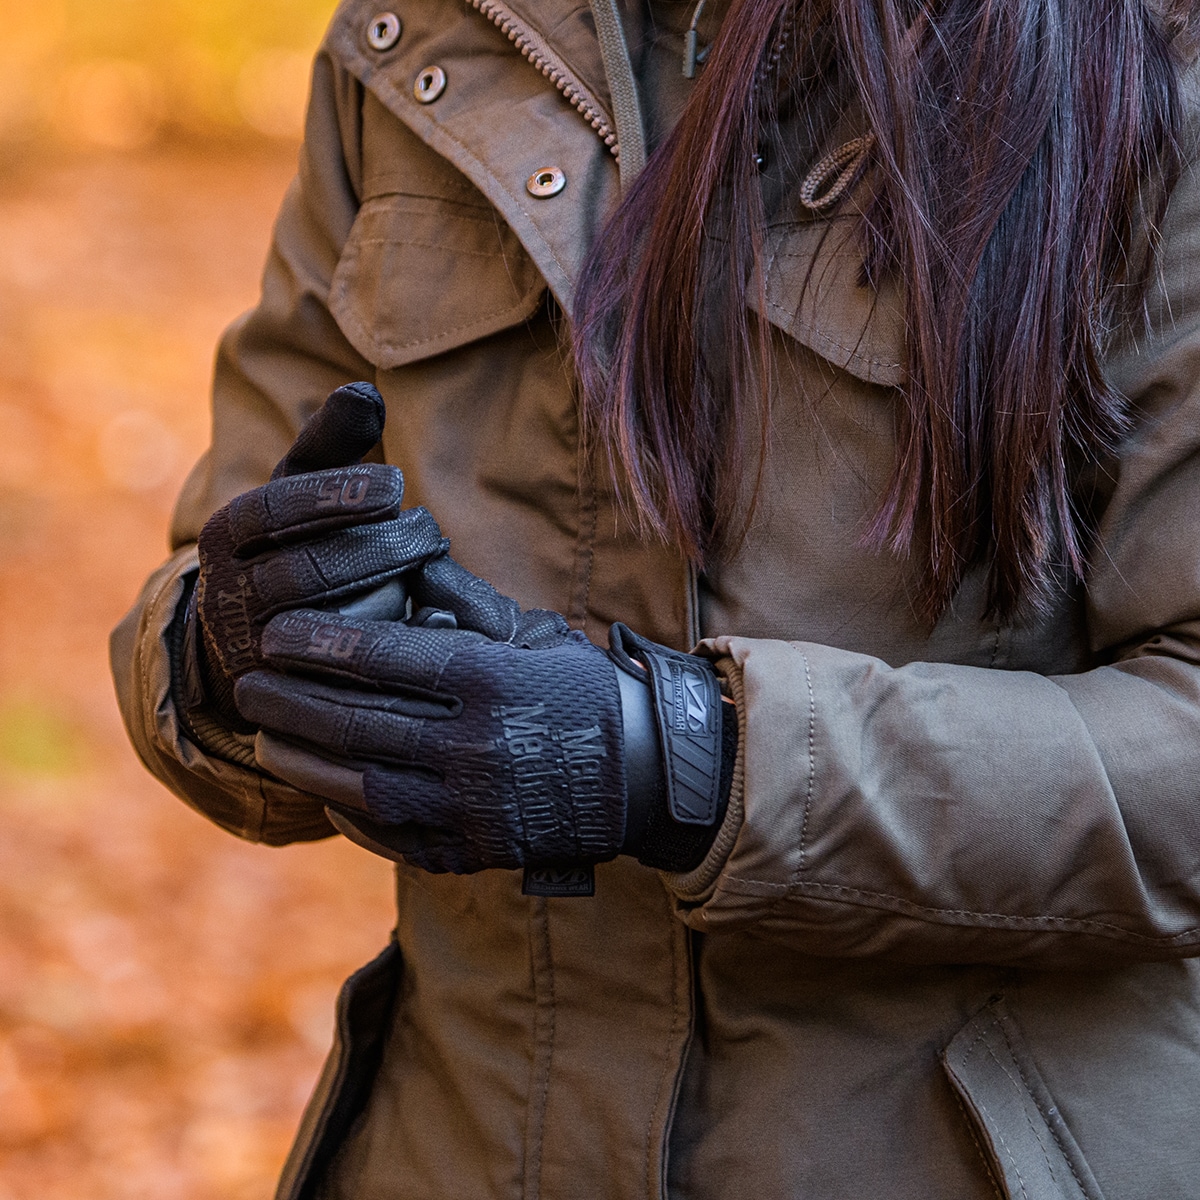 Жіночі тактичні рукавички Mechanix Wear Speciality 0,5 мм жіночі приховані